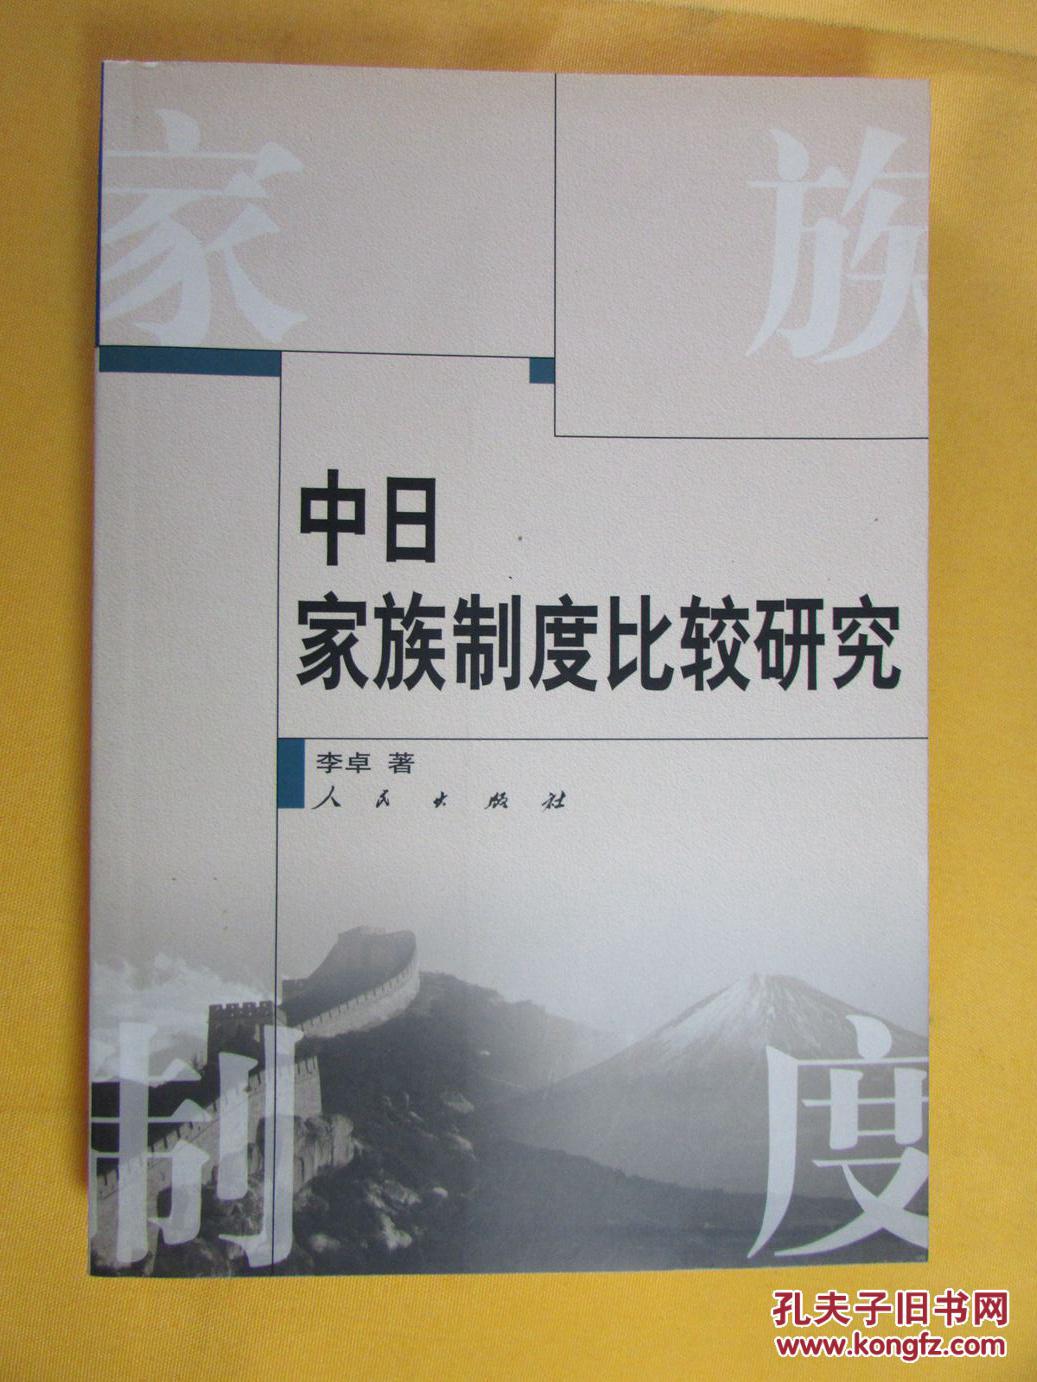 较研究(本书是对日本家族制度及其在近代化作